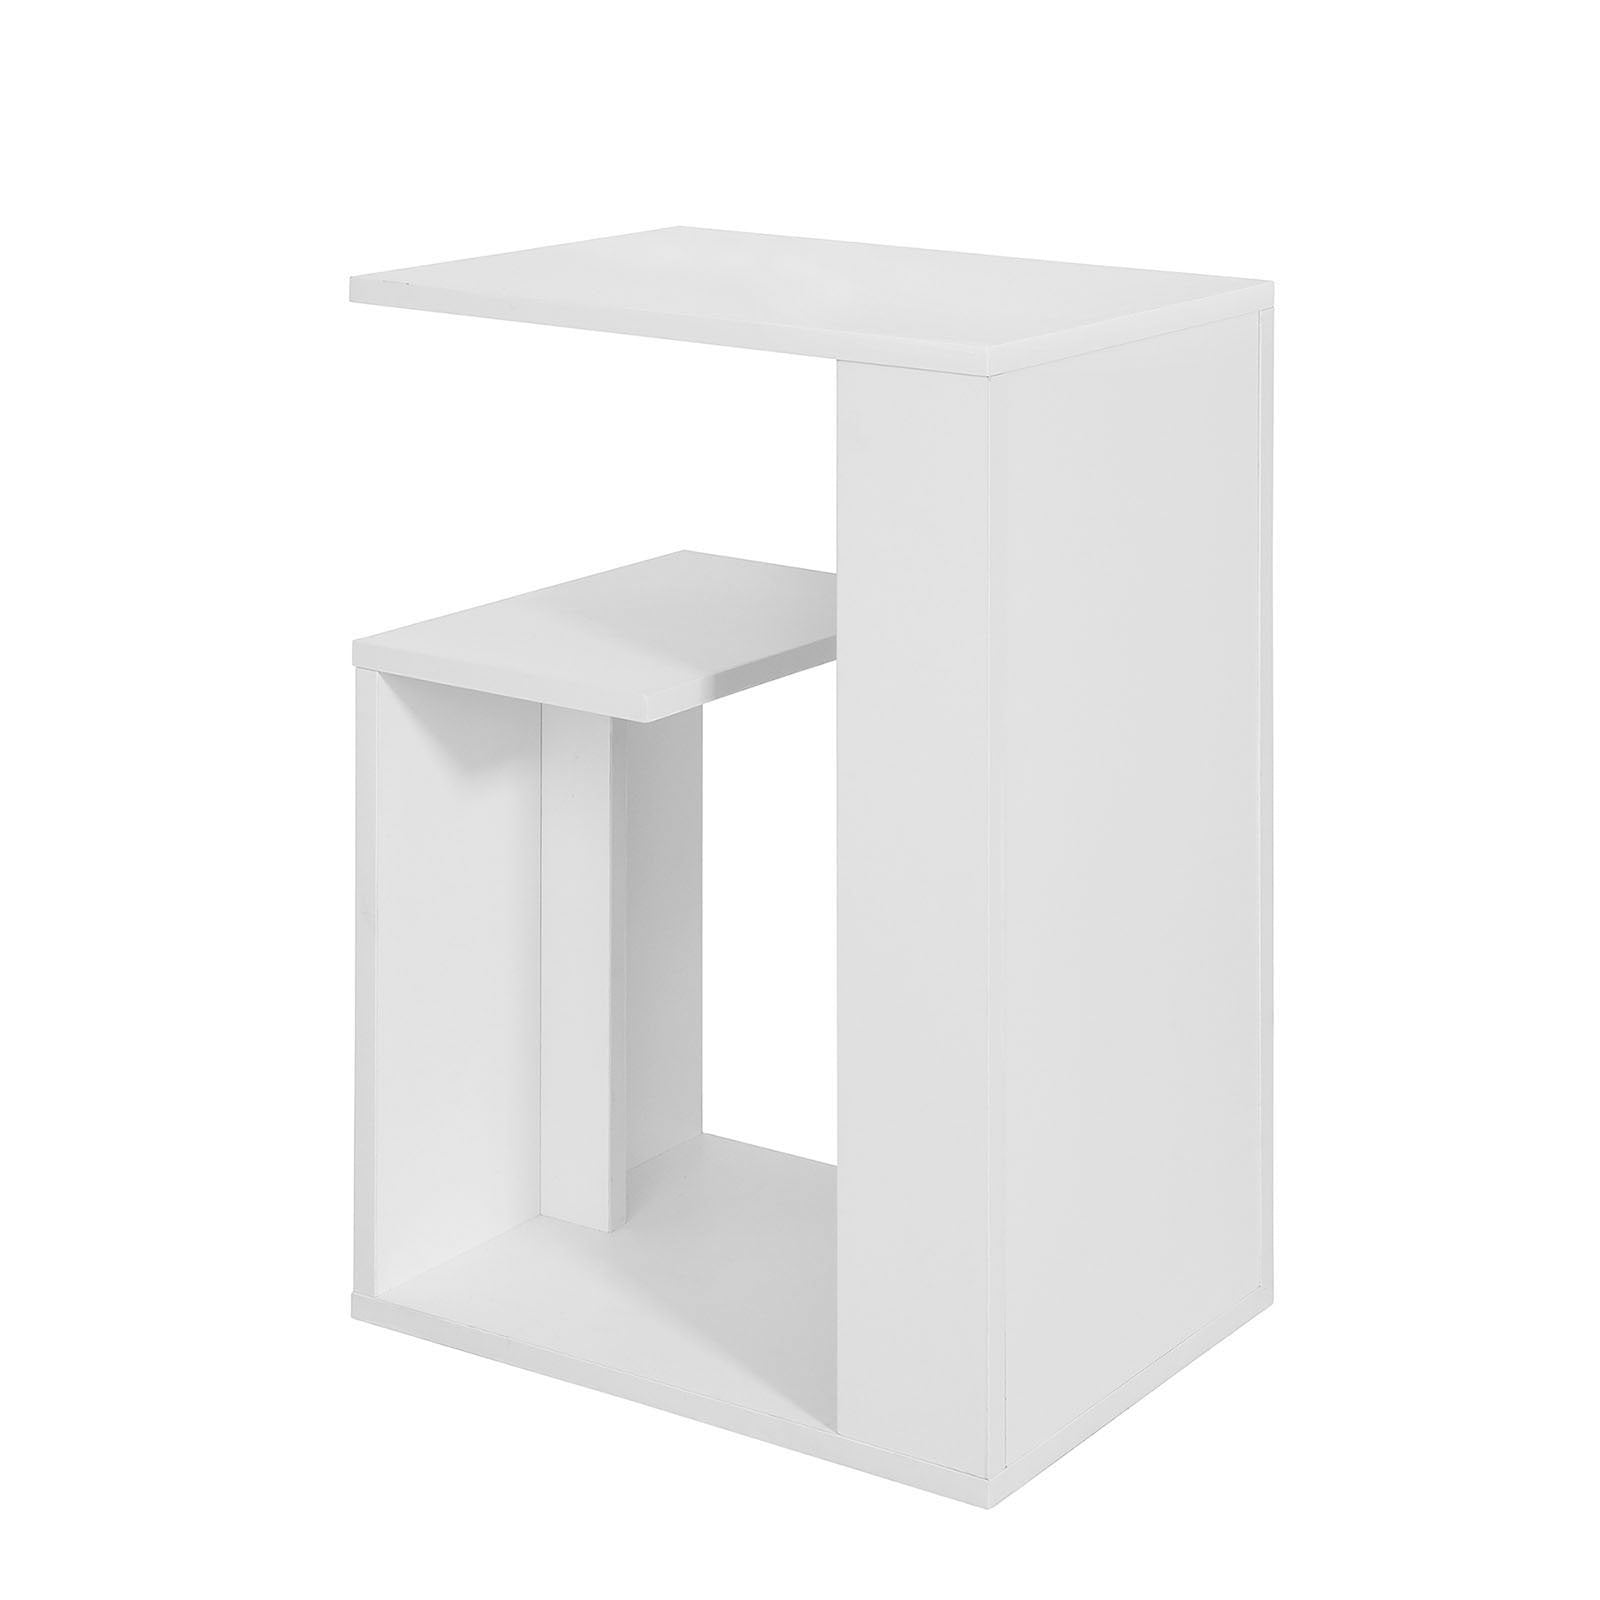 Billede af Sofabord / sidebord i moderne stil, hvid